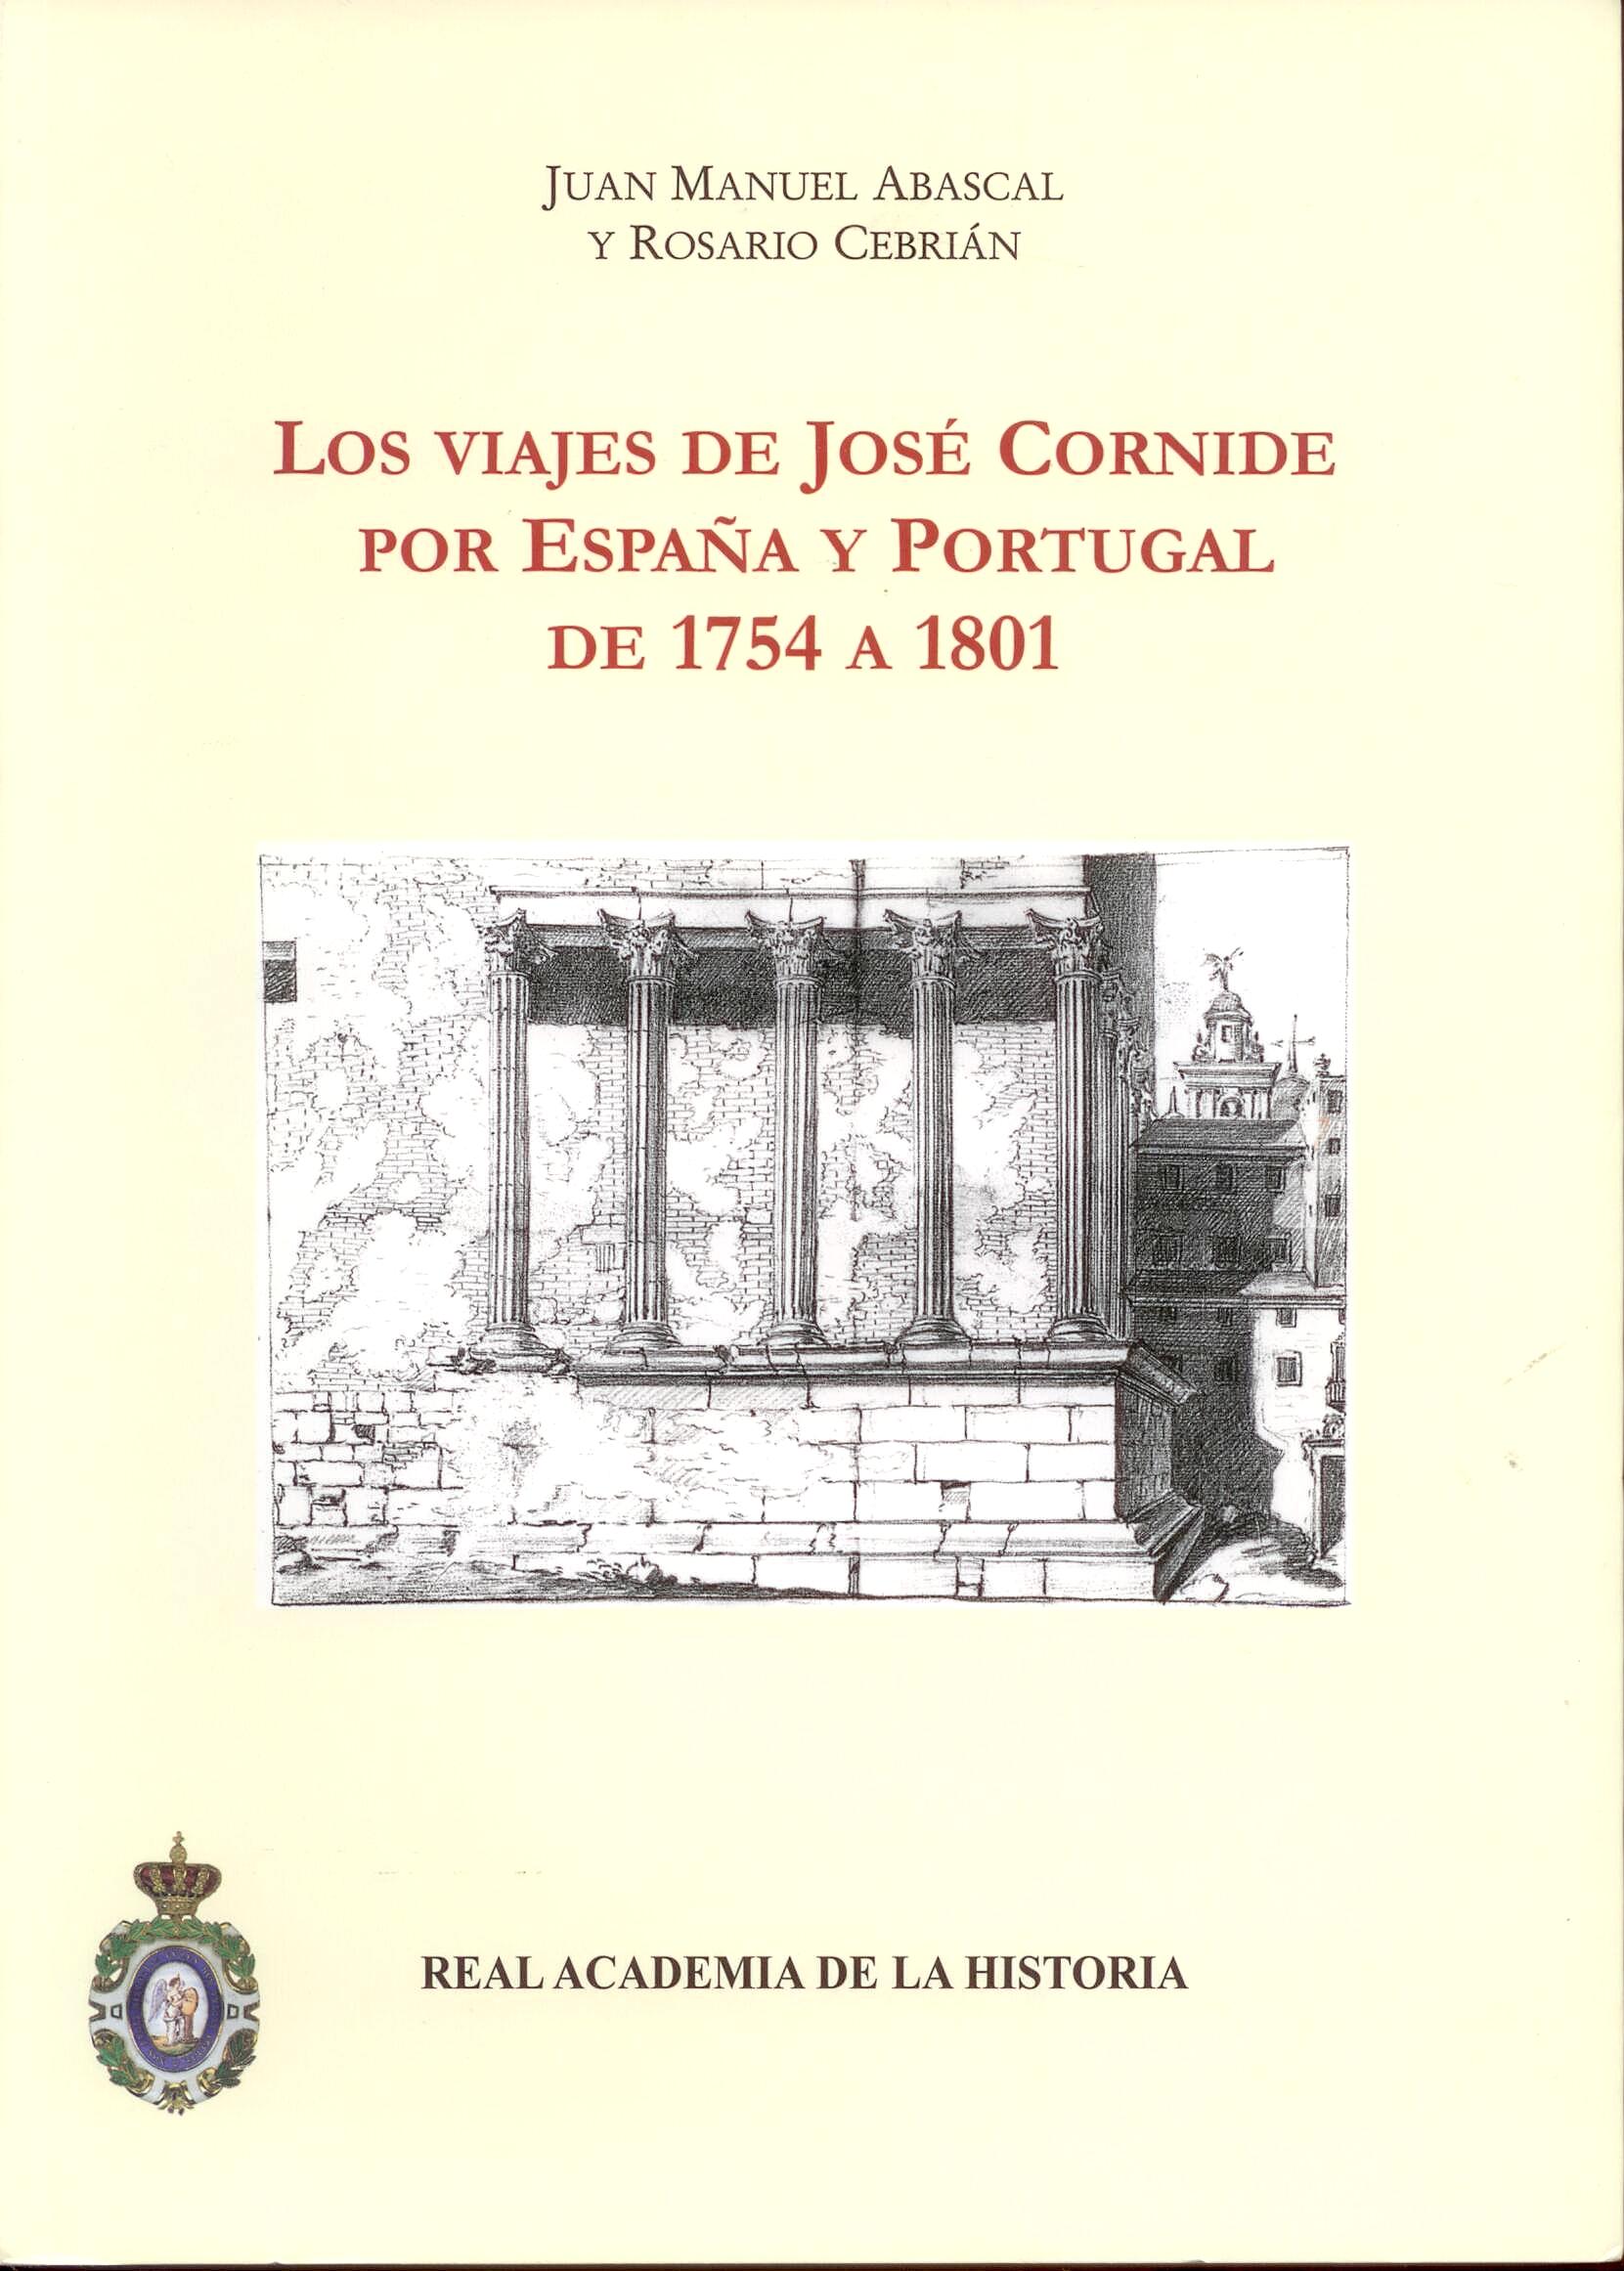 Los Viajes de Jose Cornide por España y Portugal de 1754 a 1801